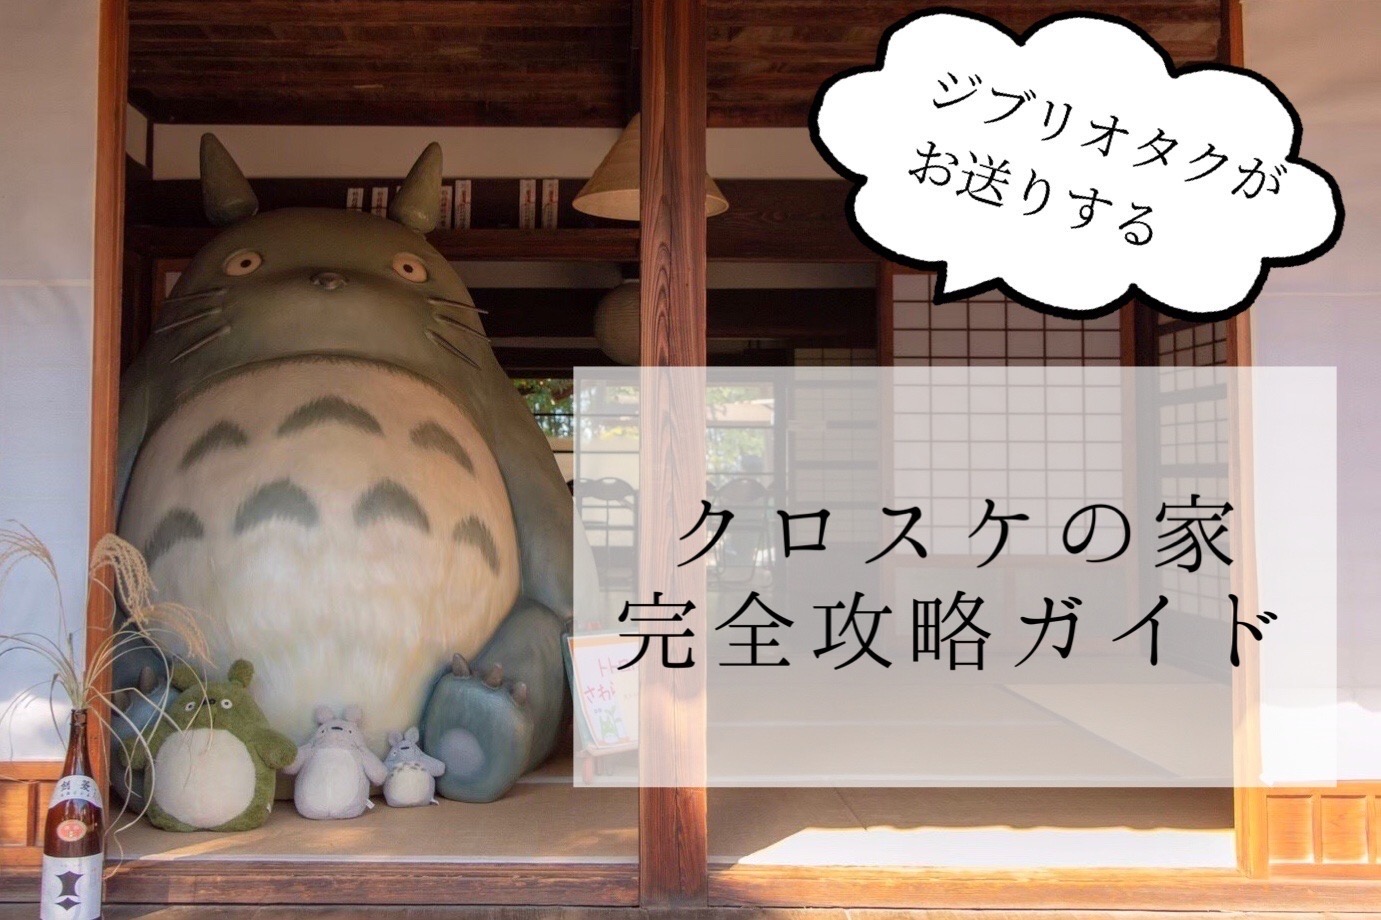 ジブリ好き必見 クロスケの家完全攻略ガイド 埼玉県の紅葉も綺麗なトトロのお家へようこそ Atelier Mofmof